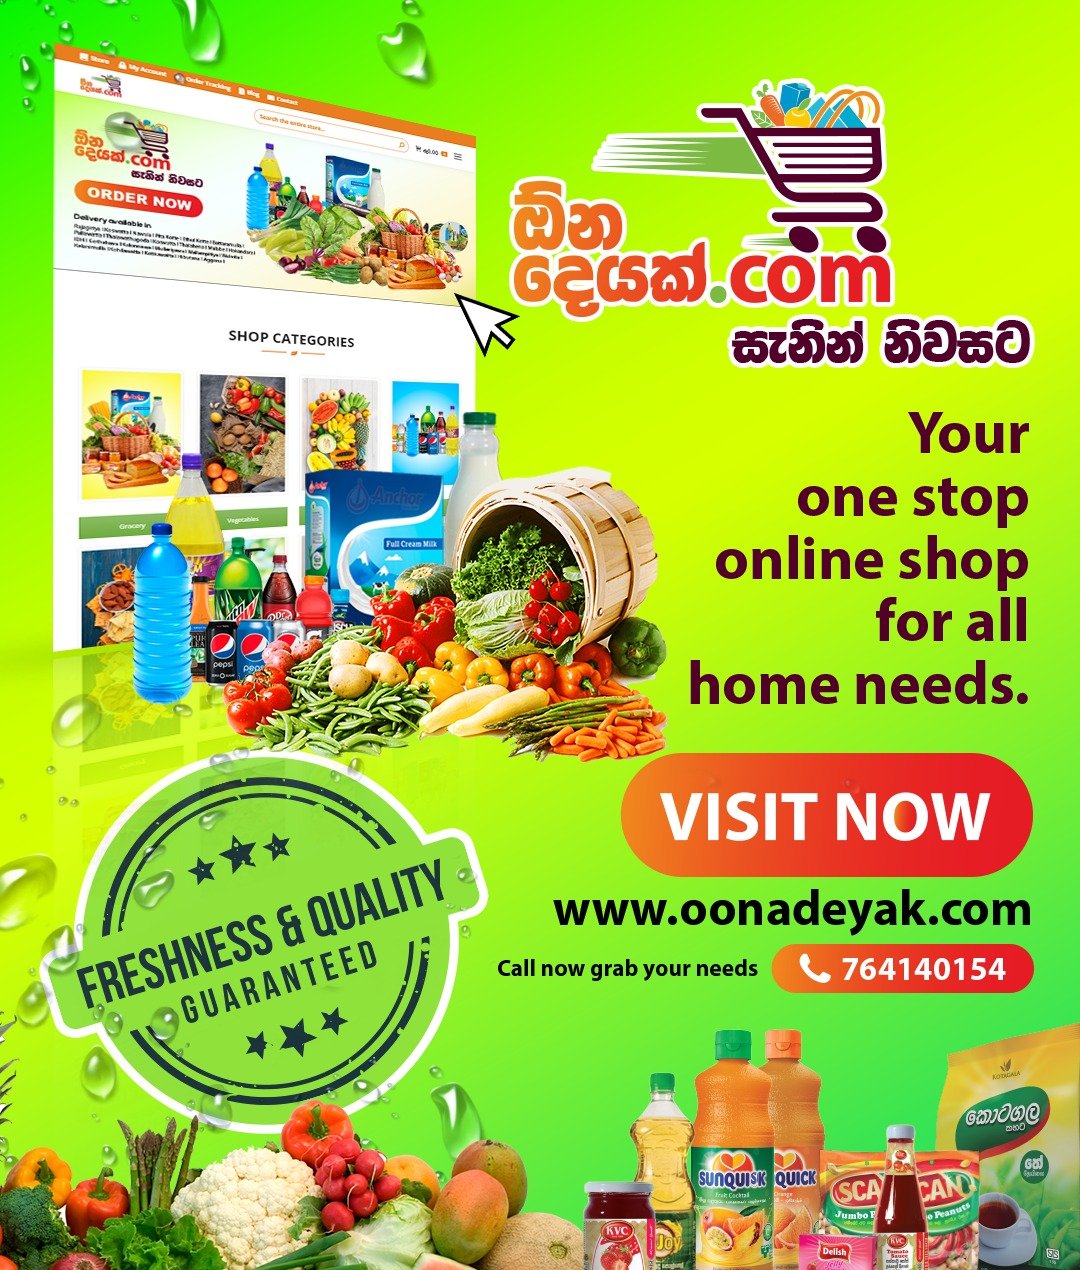 oonadeyak.com delivery